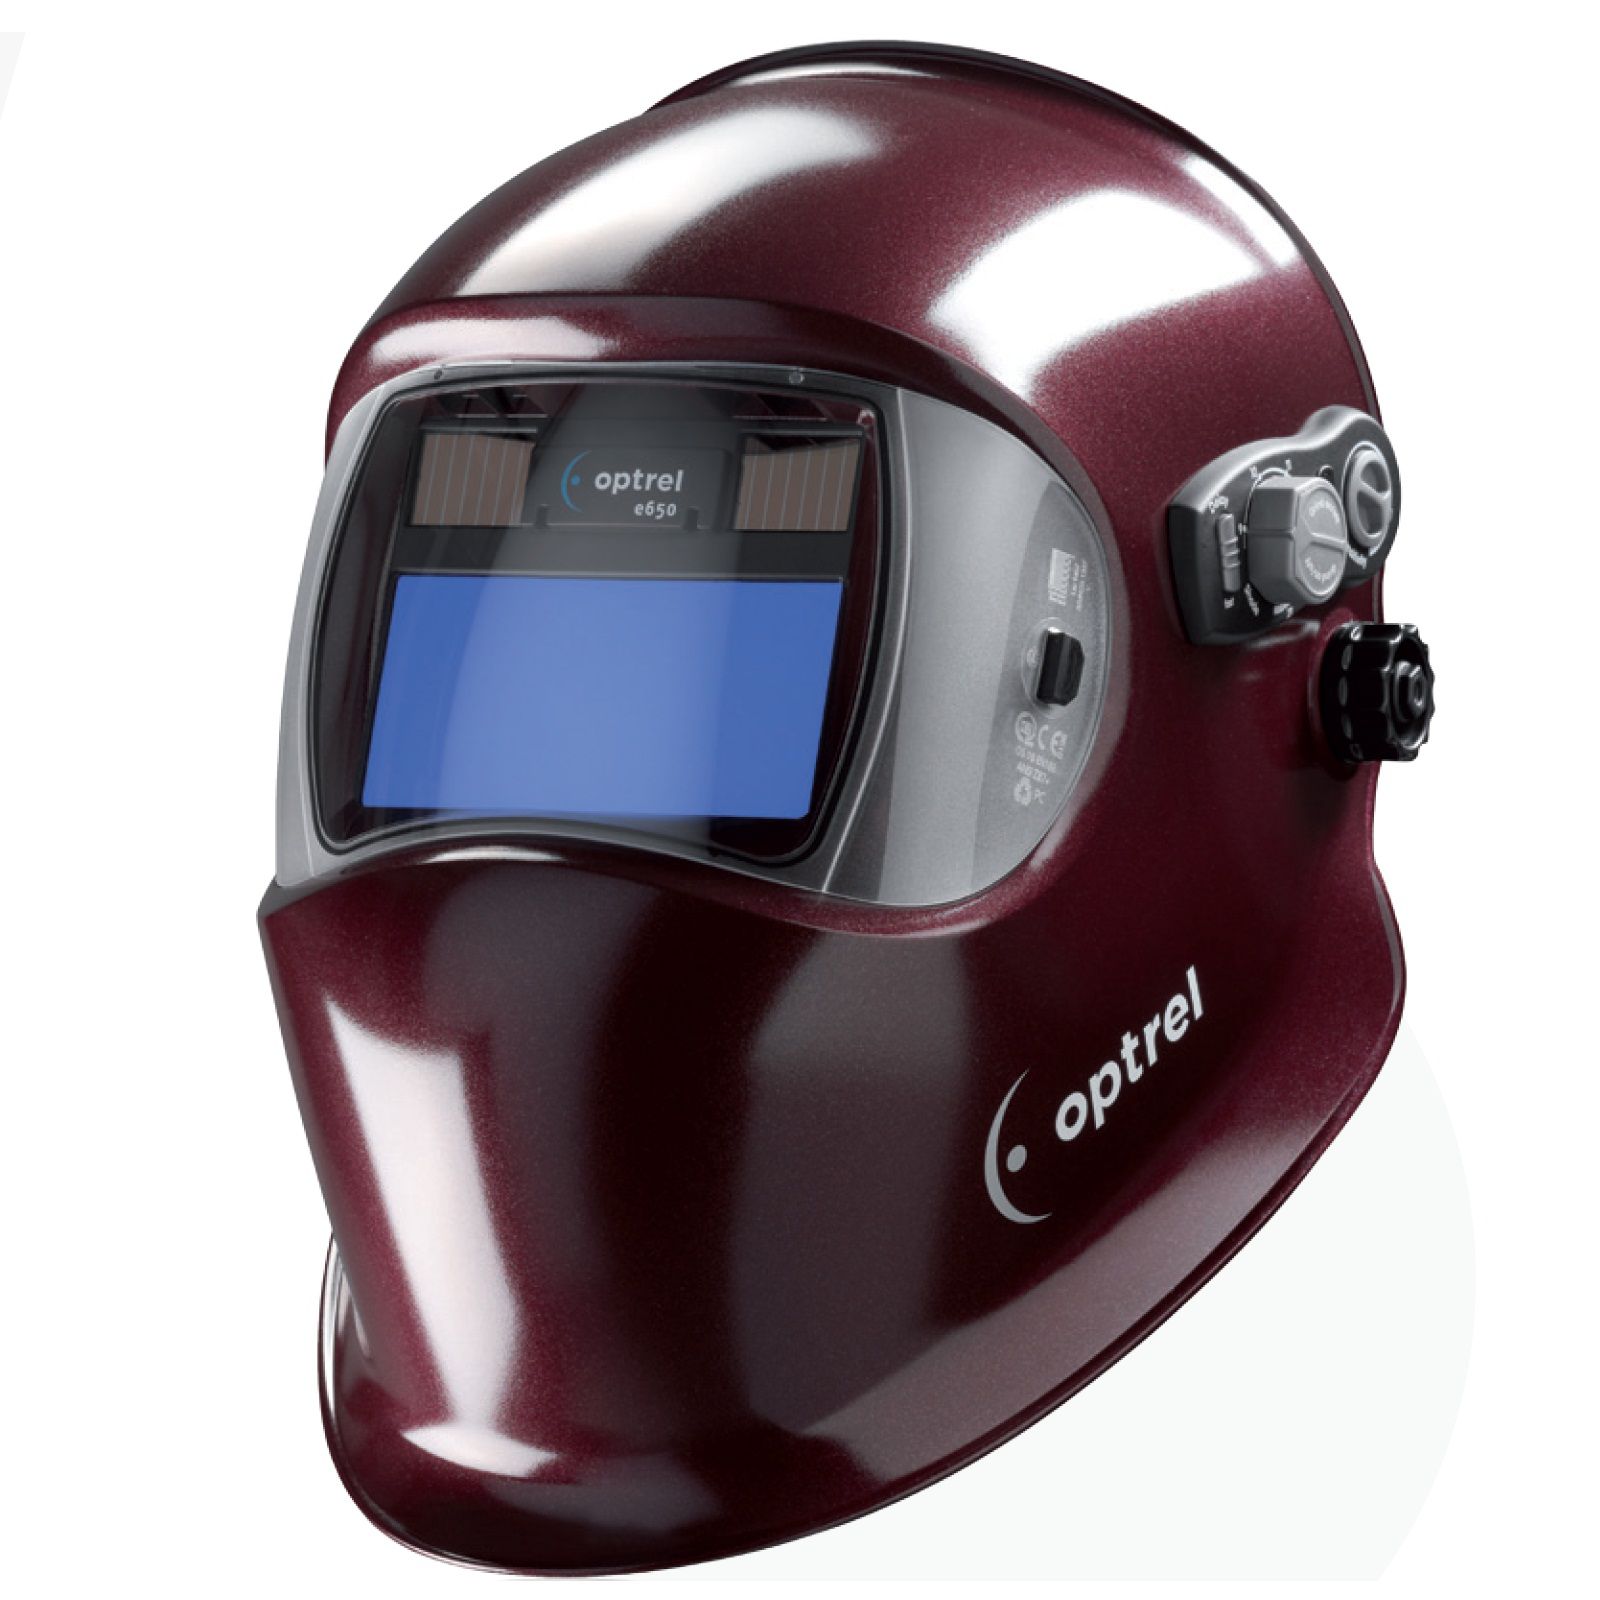 Сварочная маска с автоматическим светофильтром Optrel e650 shiny ruby